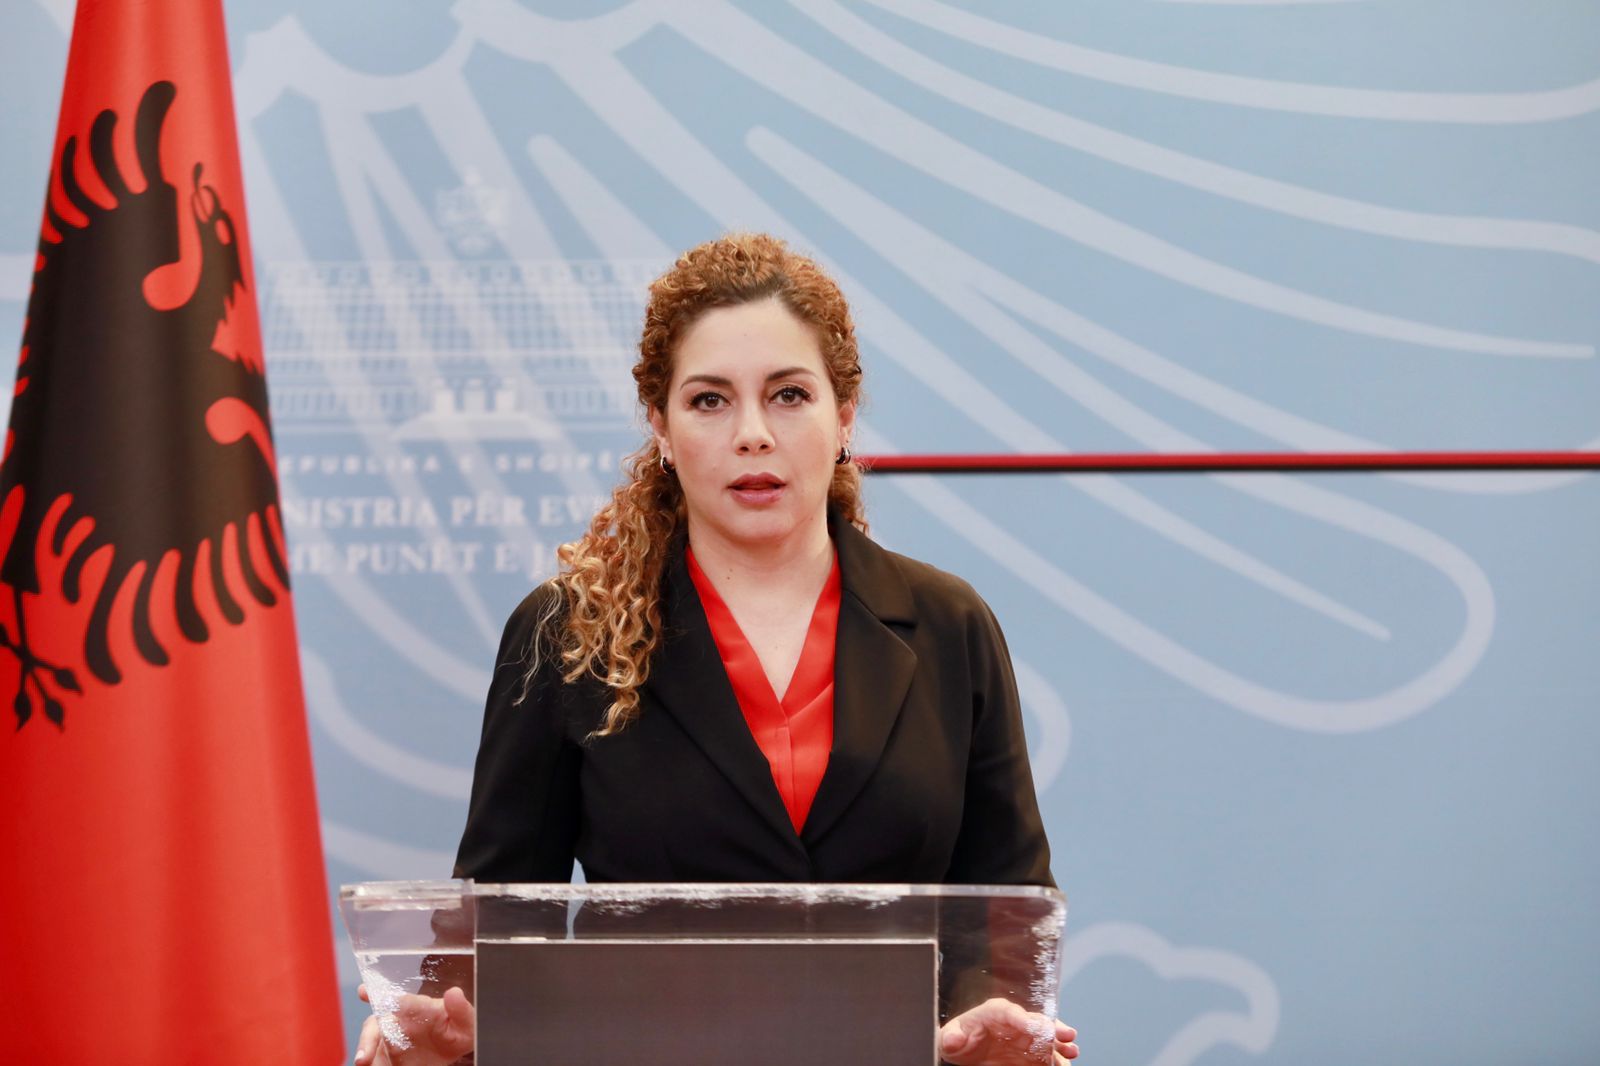 Xhaçka: Shqipëria koordinim me partnerët për presion ndaj Rusisë që të ndalojë sulmet ndaj civilëve - Telegrafi